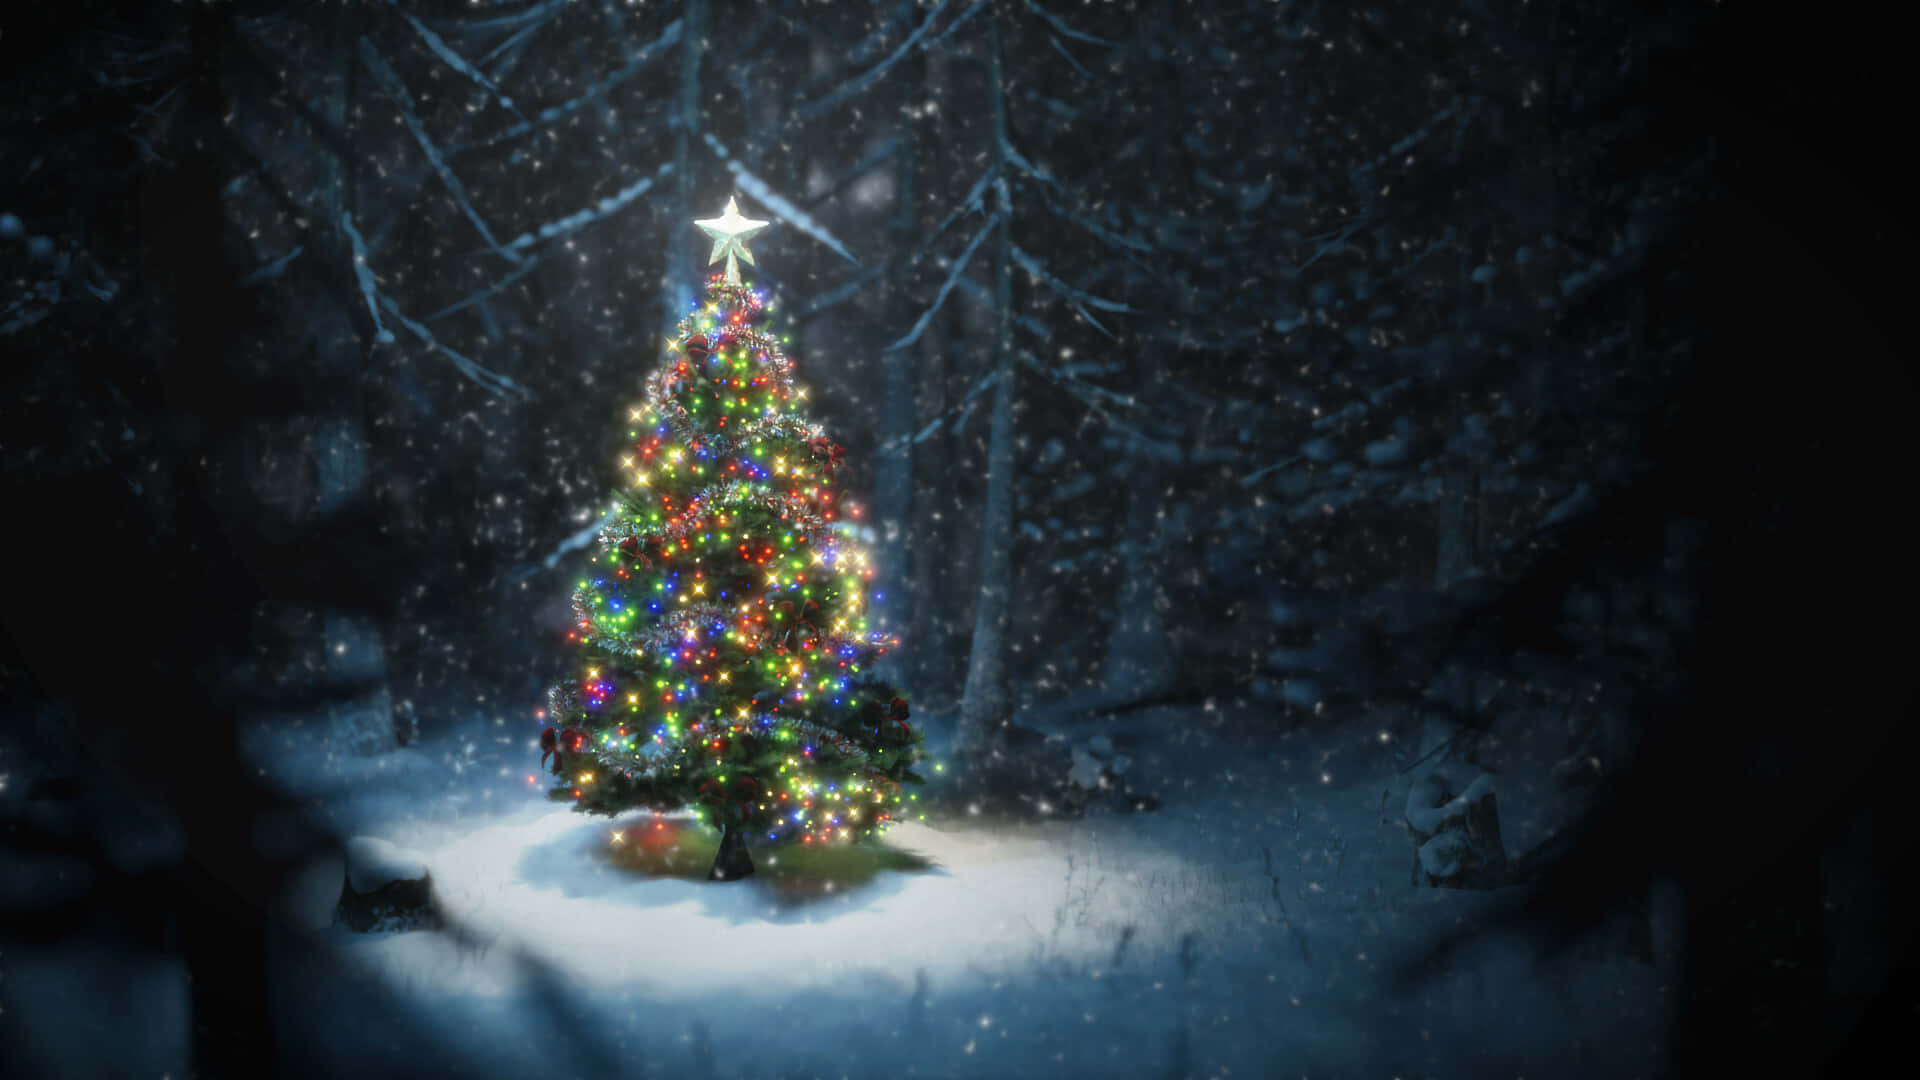 Imagende Un Árbol De Navidad Con Decoraciones Y Luces.